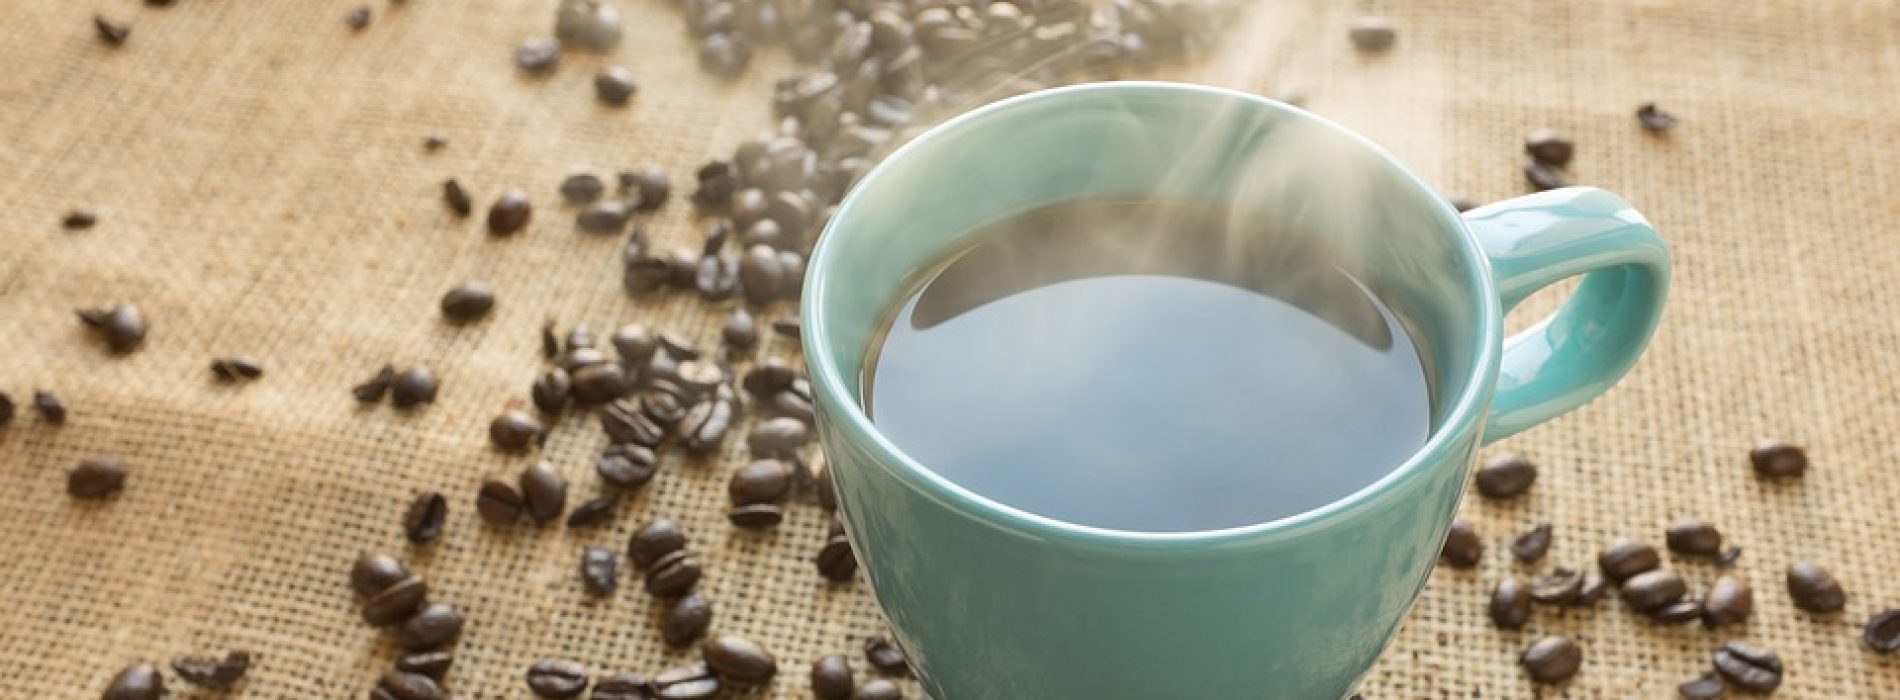 Nestle voert tests uit na het vinden van hoge niveaus van gevaarlijke onkruidverdelger in koffiebonen